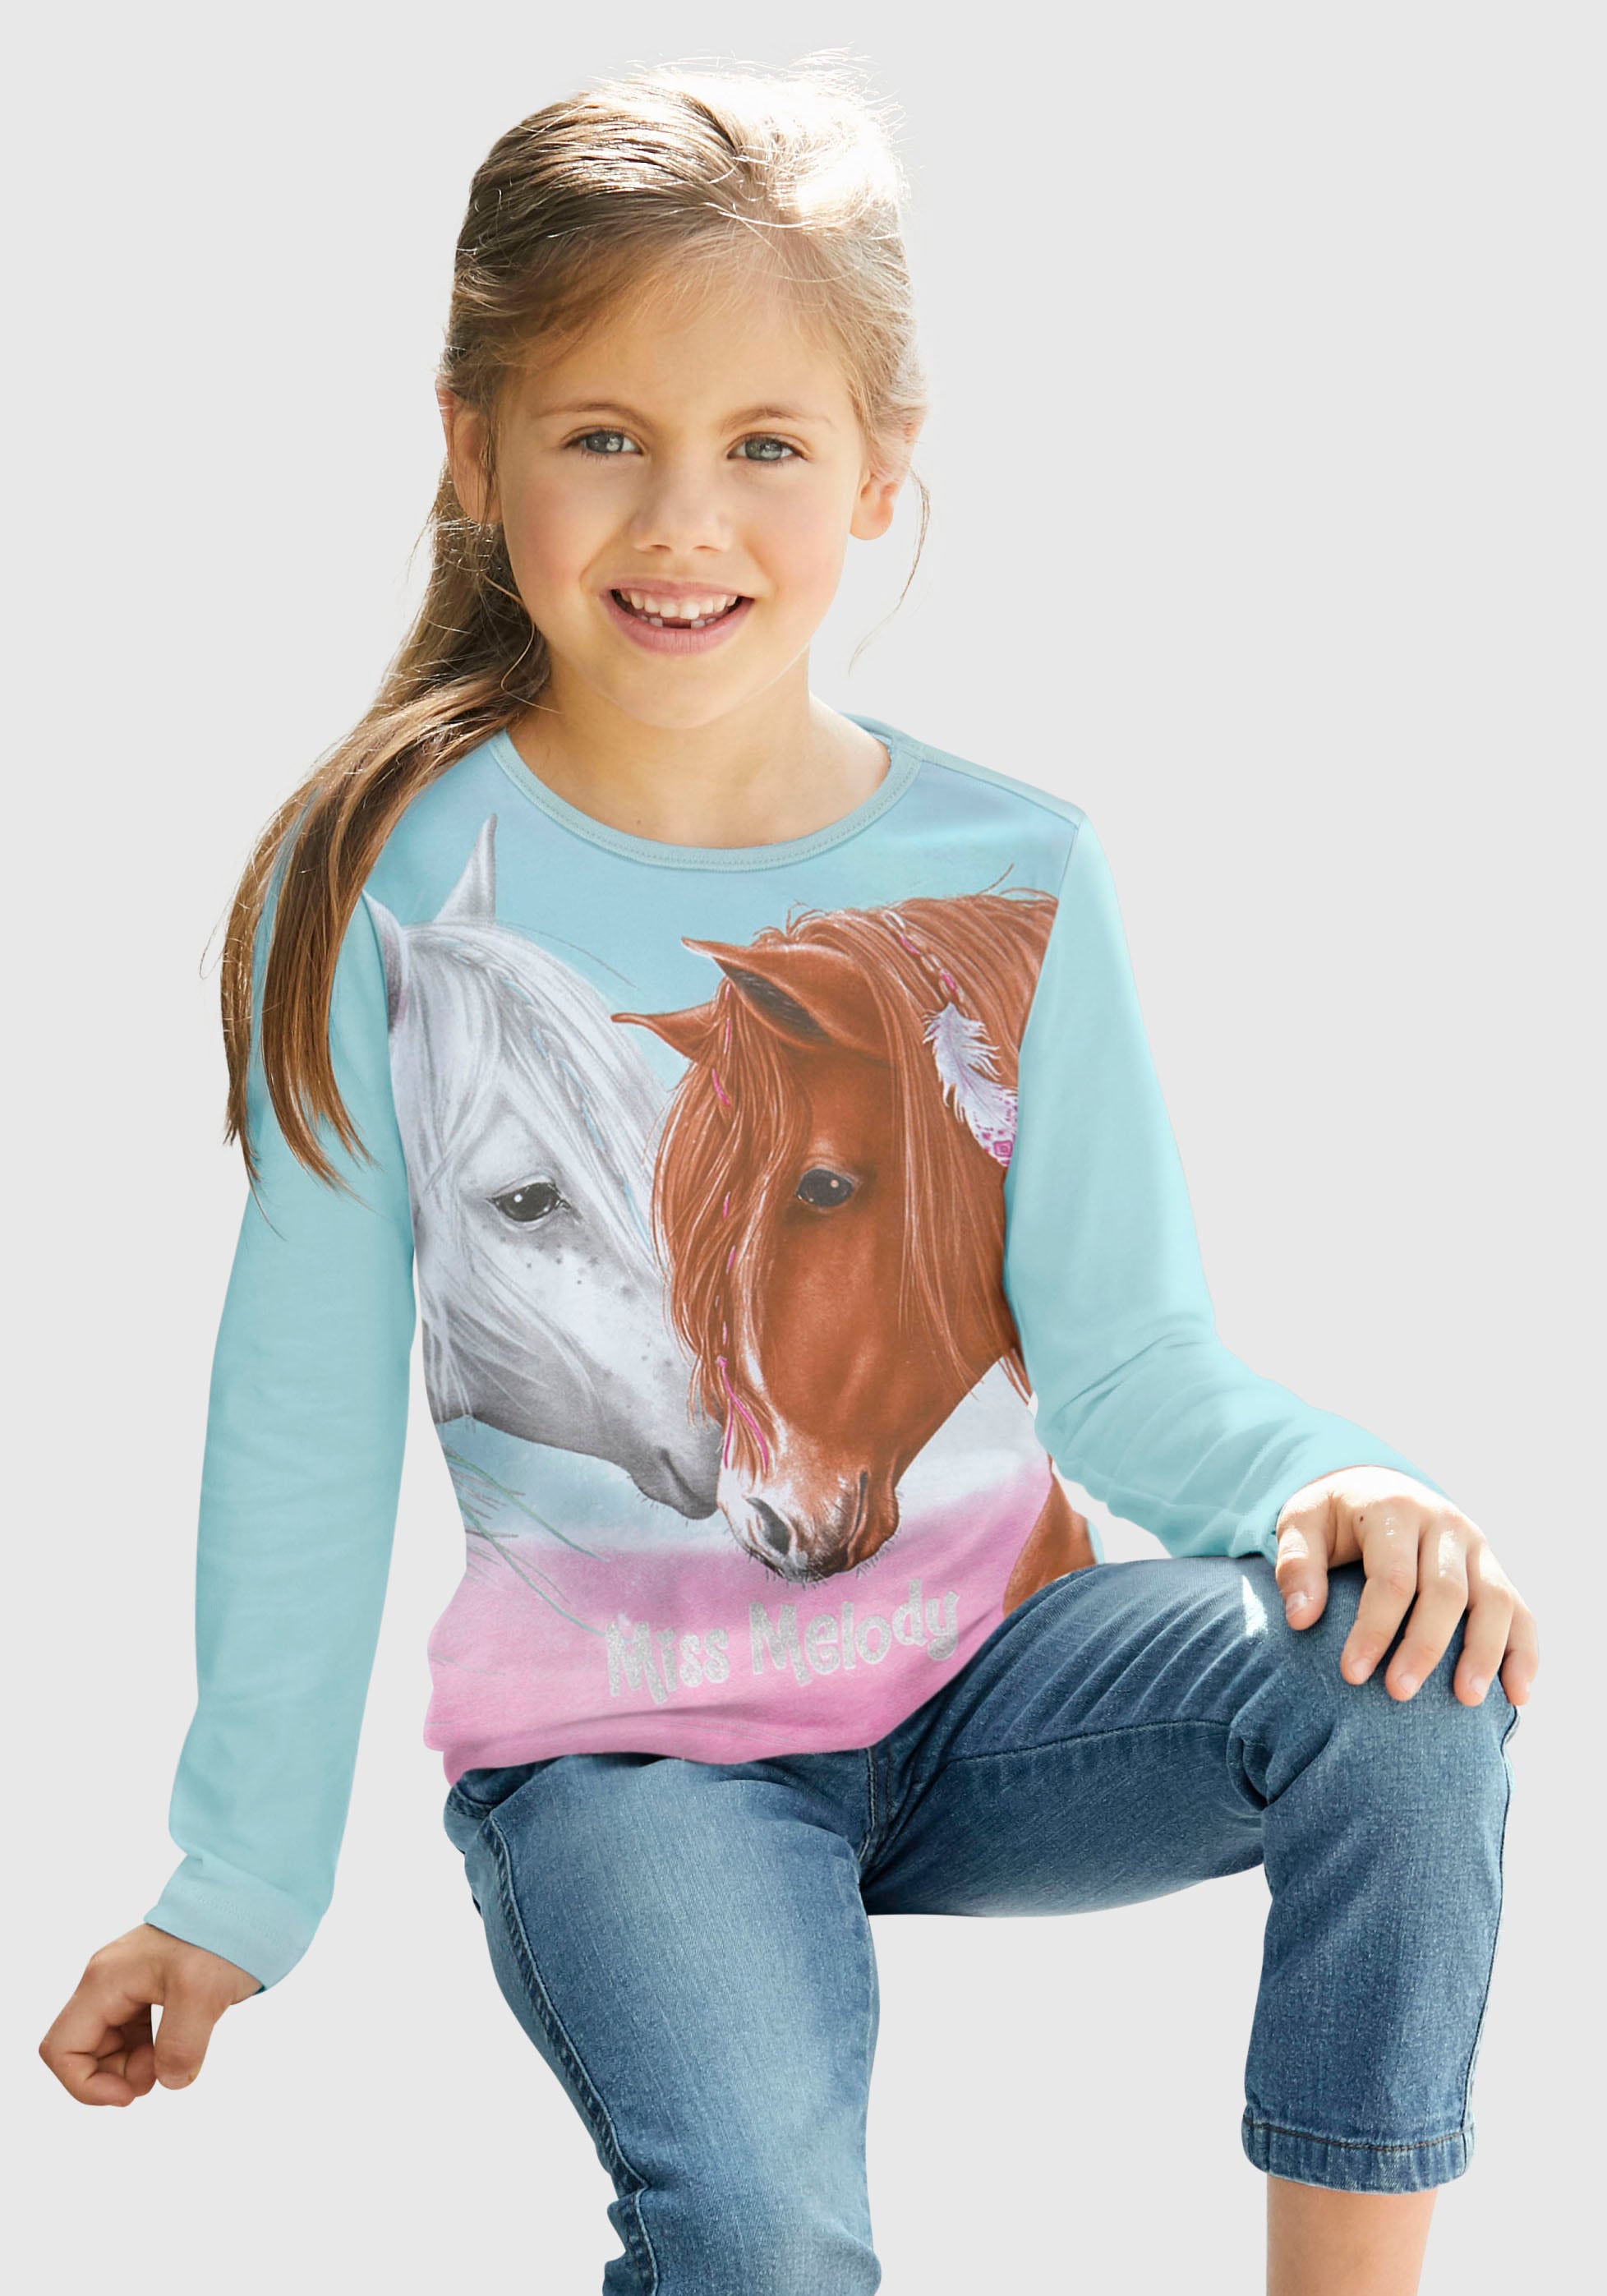 Melody Langarmshirt für Miss Pferde-Fans